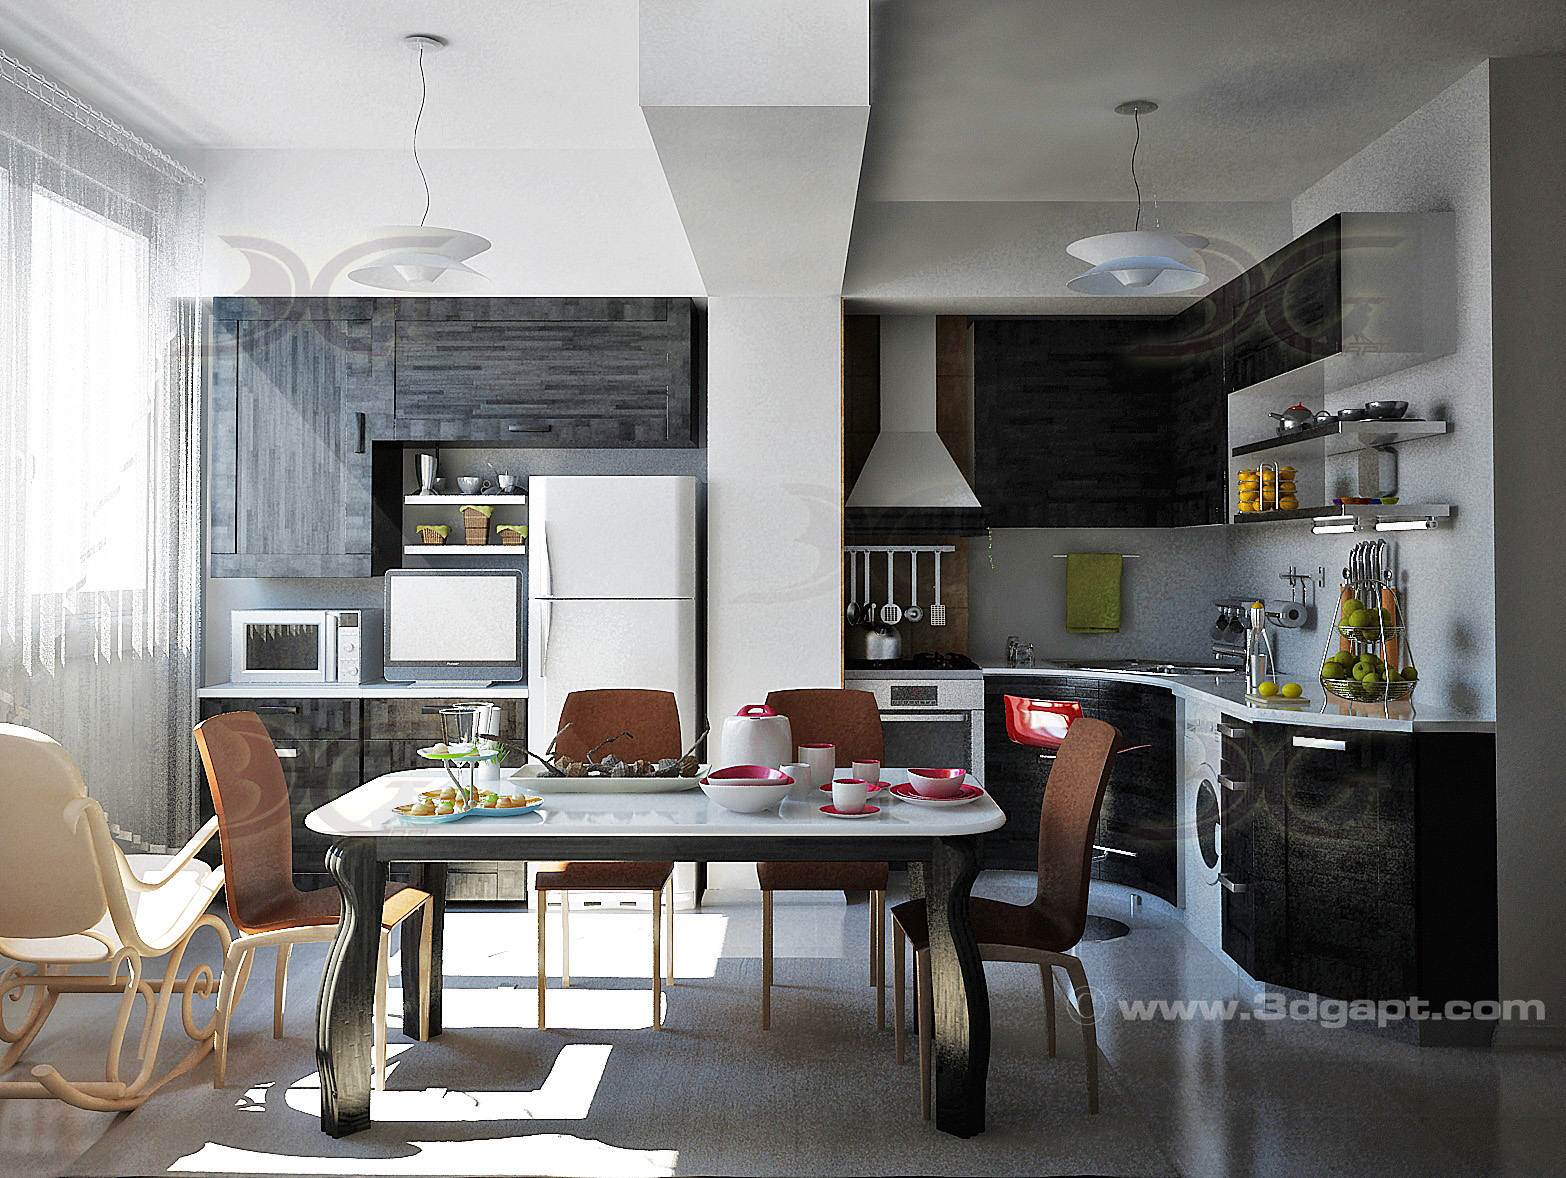 architecture interior kitchen-3versions 44